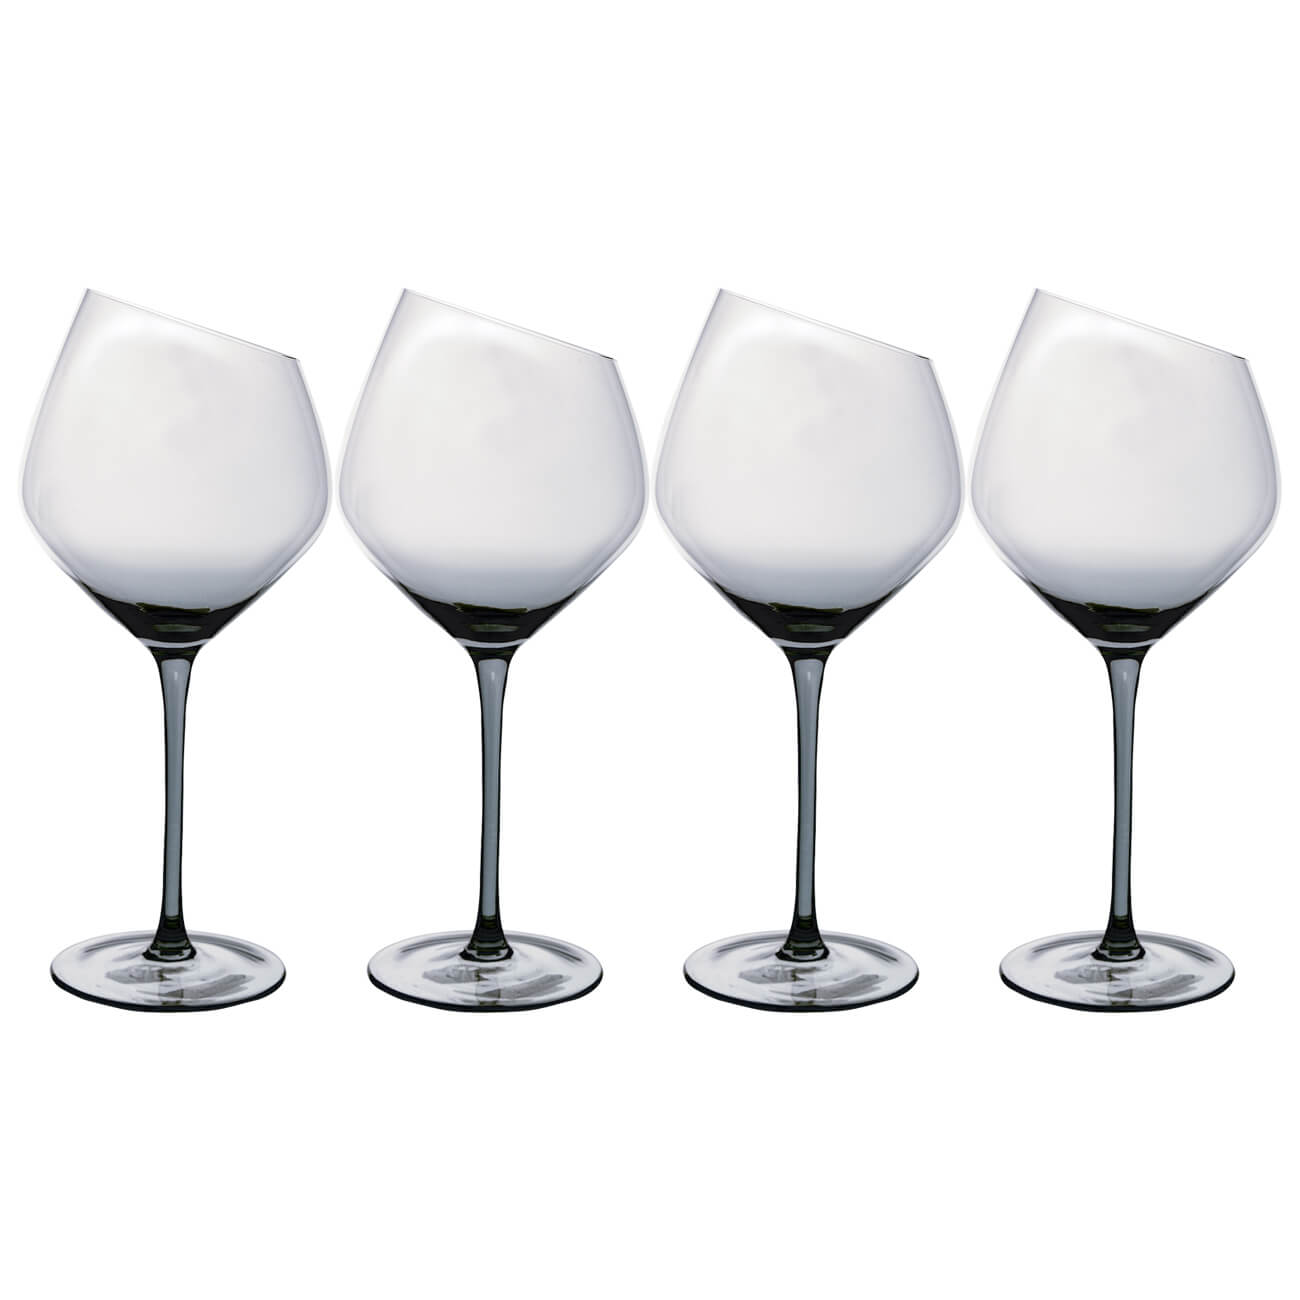 Бокал для красного вина, 560 мл, 4 шт, стекло, серый, Charm L Color бокал для белого вина 460 мл 2 шт стекло charm v